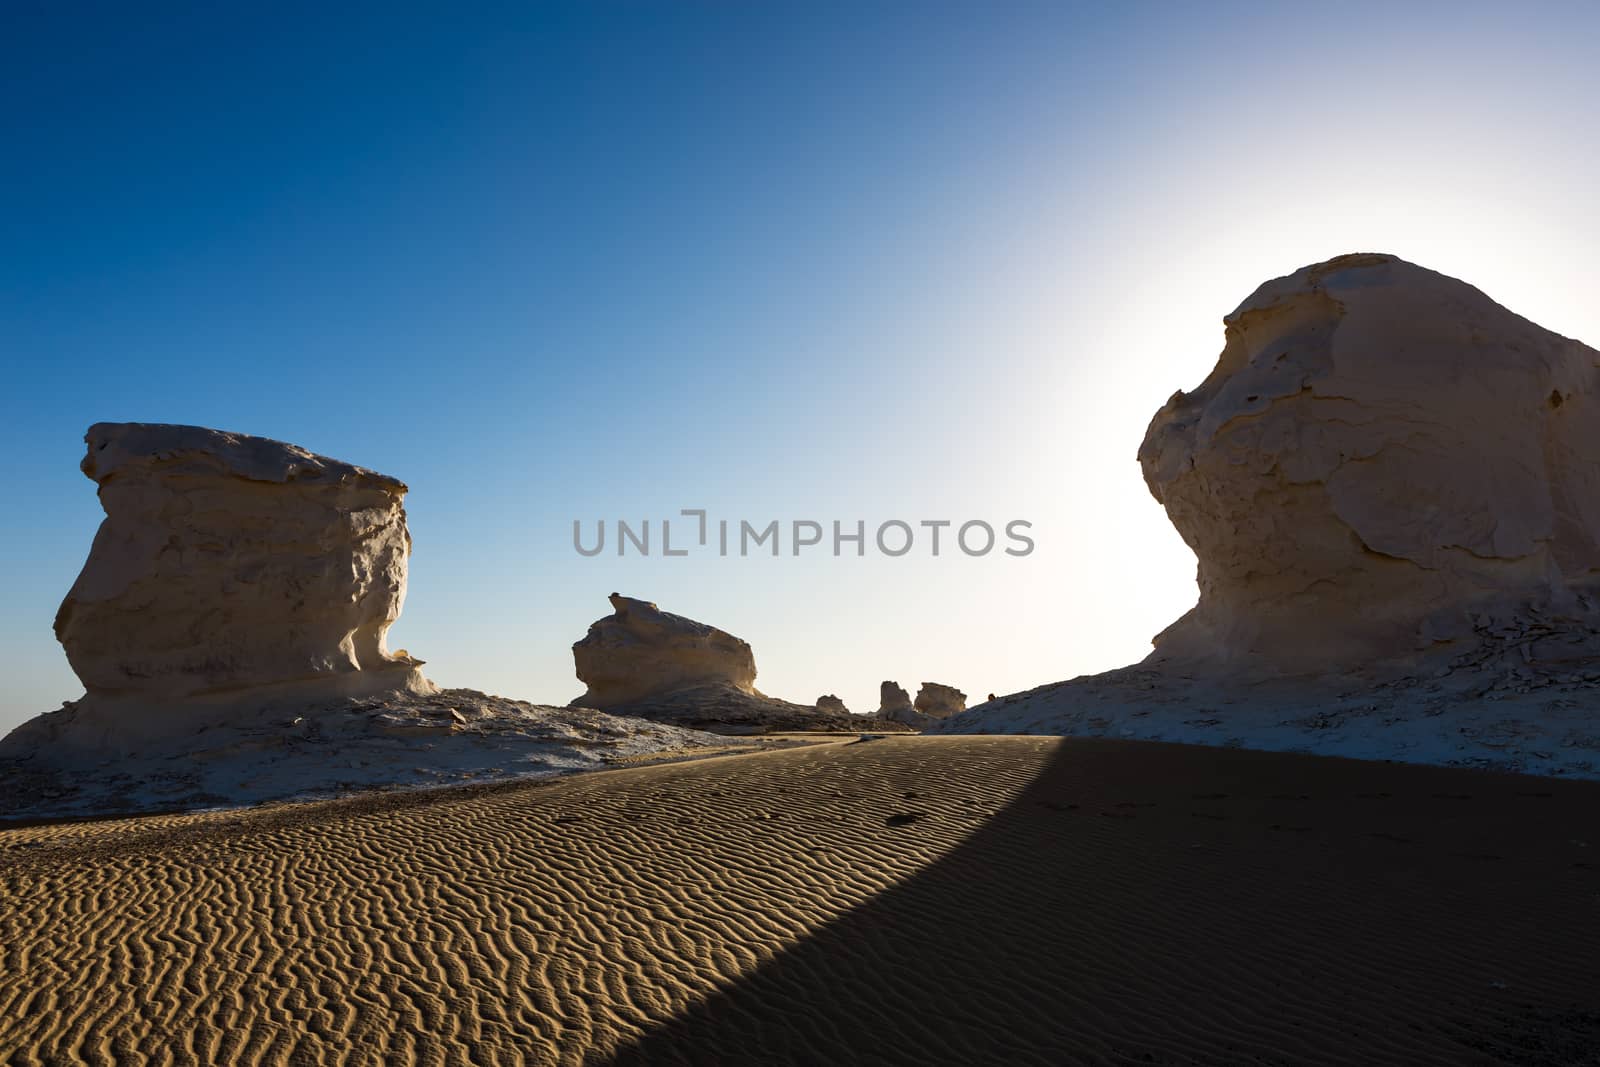 The White Desert at Farafra in the Sahara of Egypt. by SeuMelhorClick